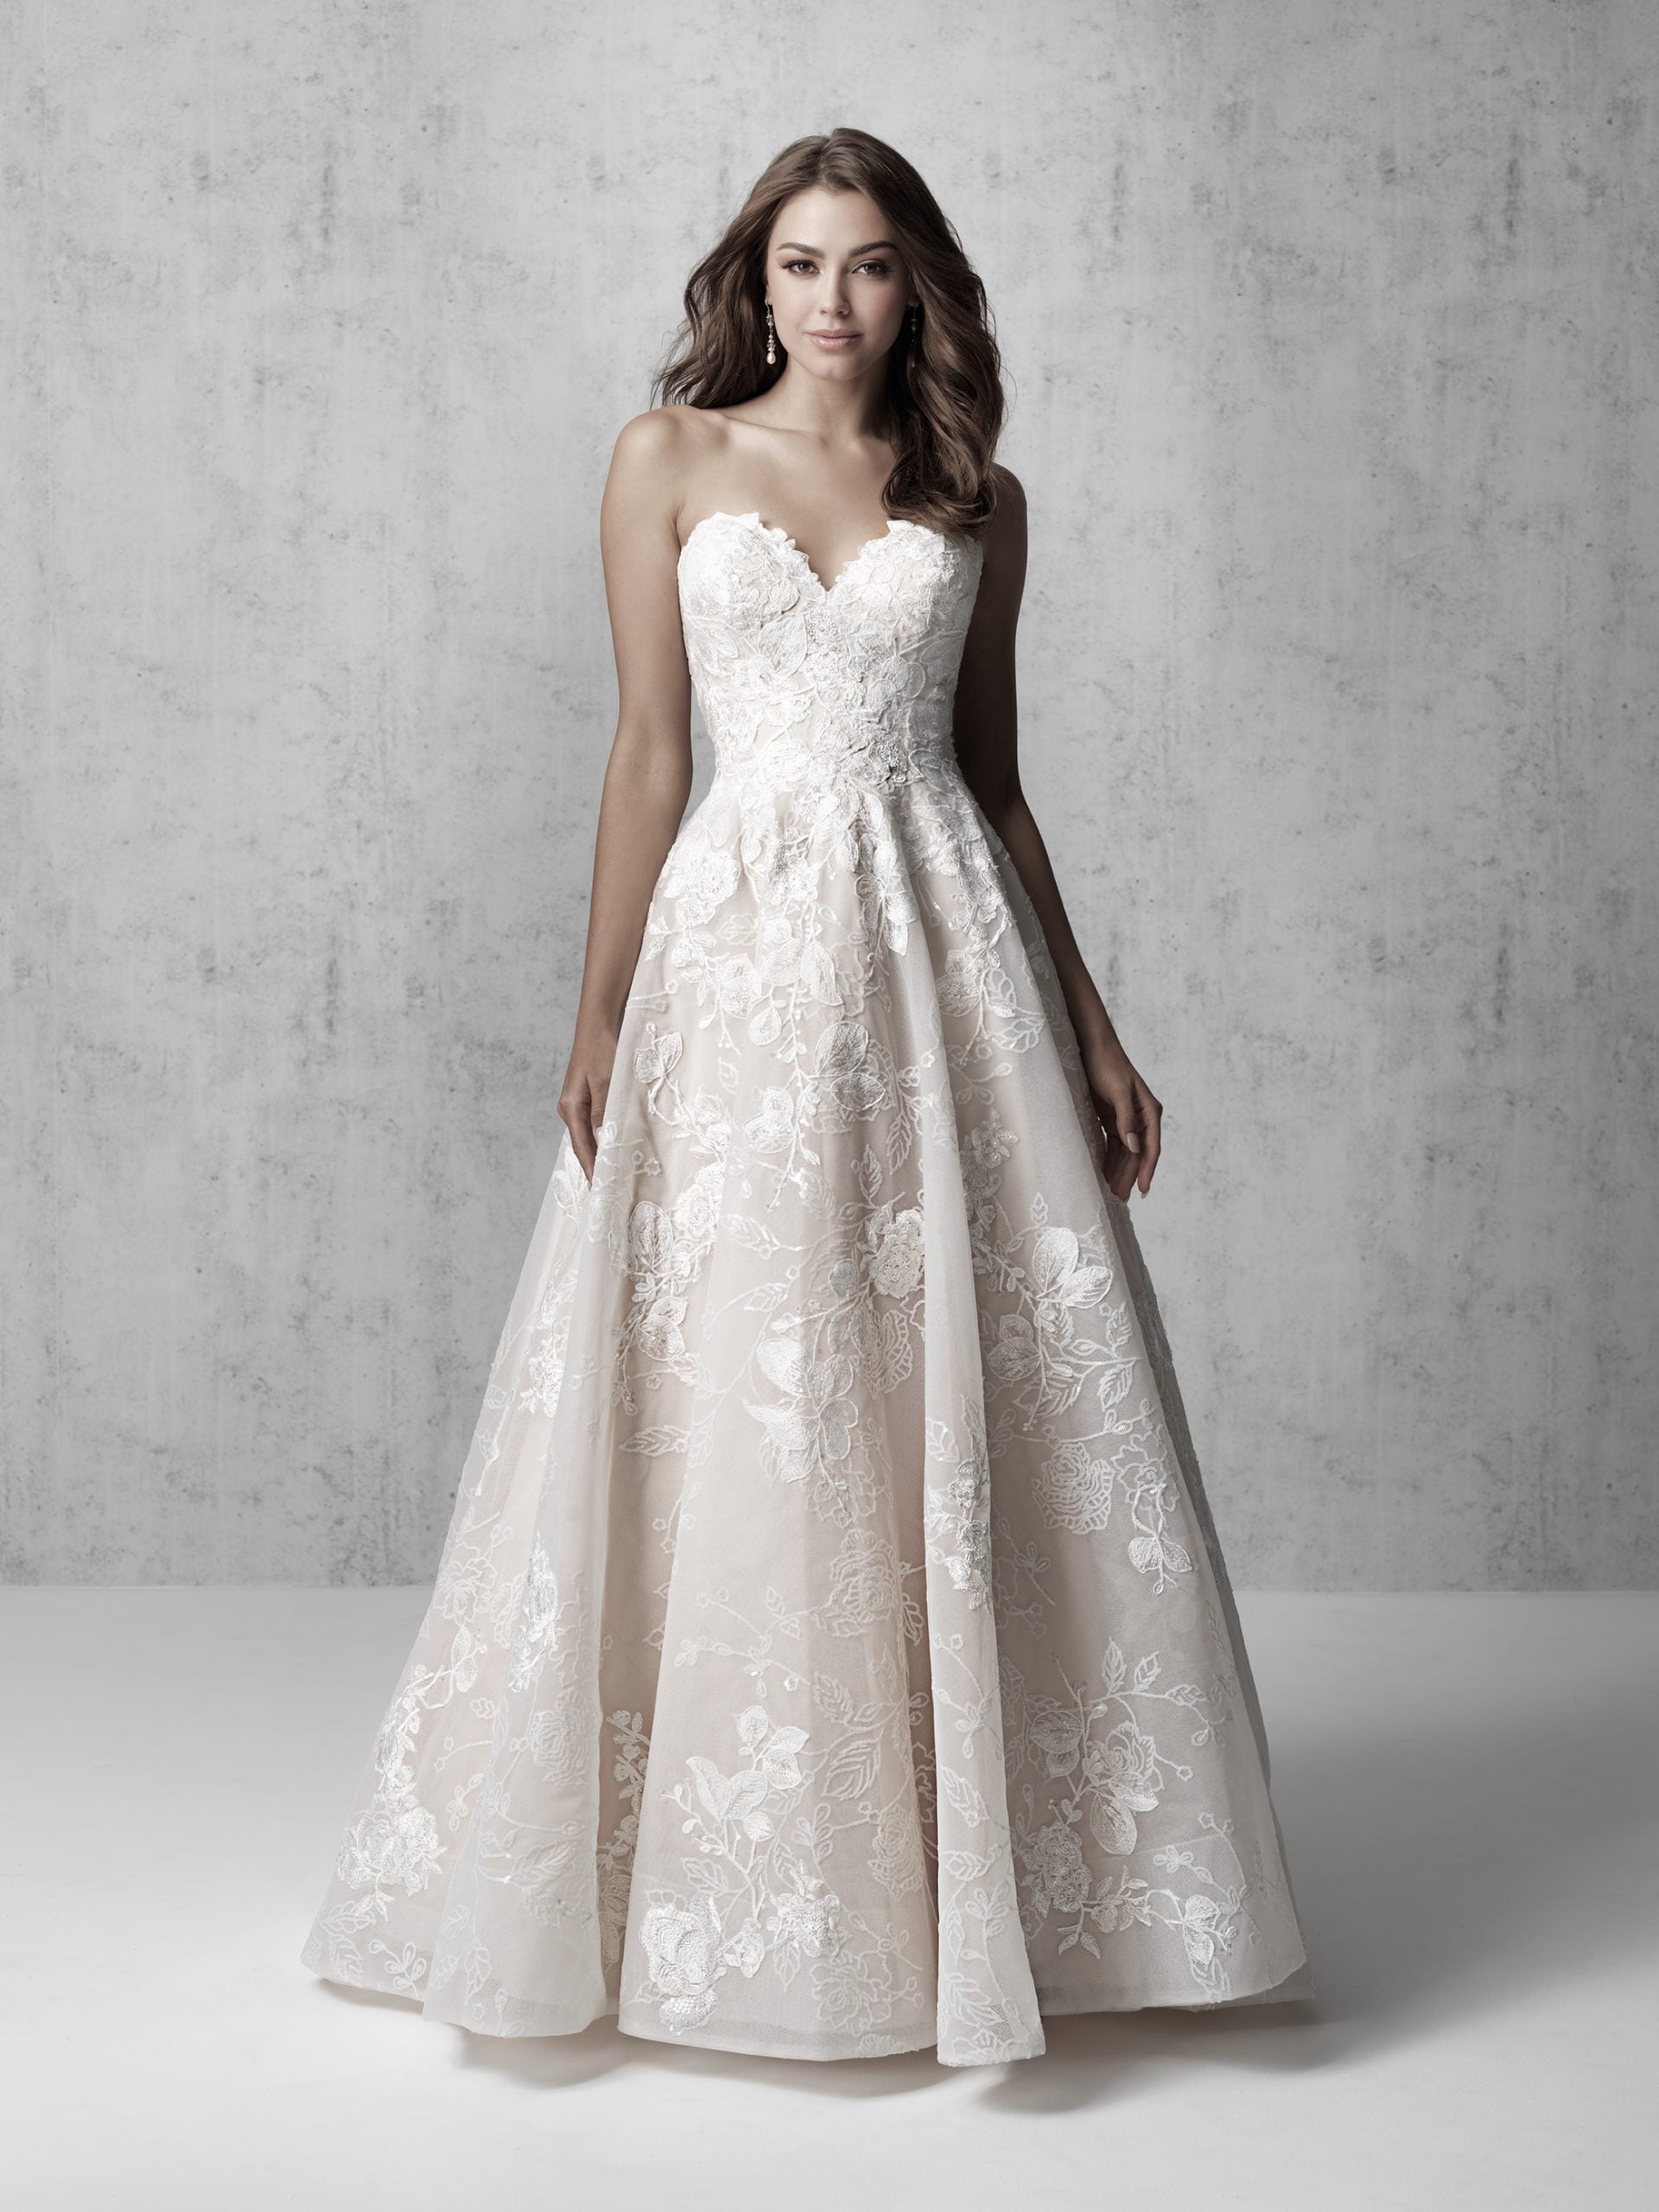 Buy > applique bridesmaid dress > in stock